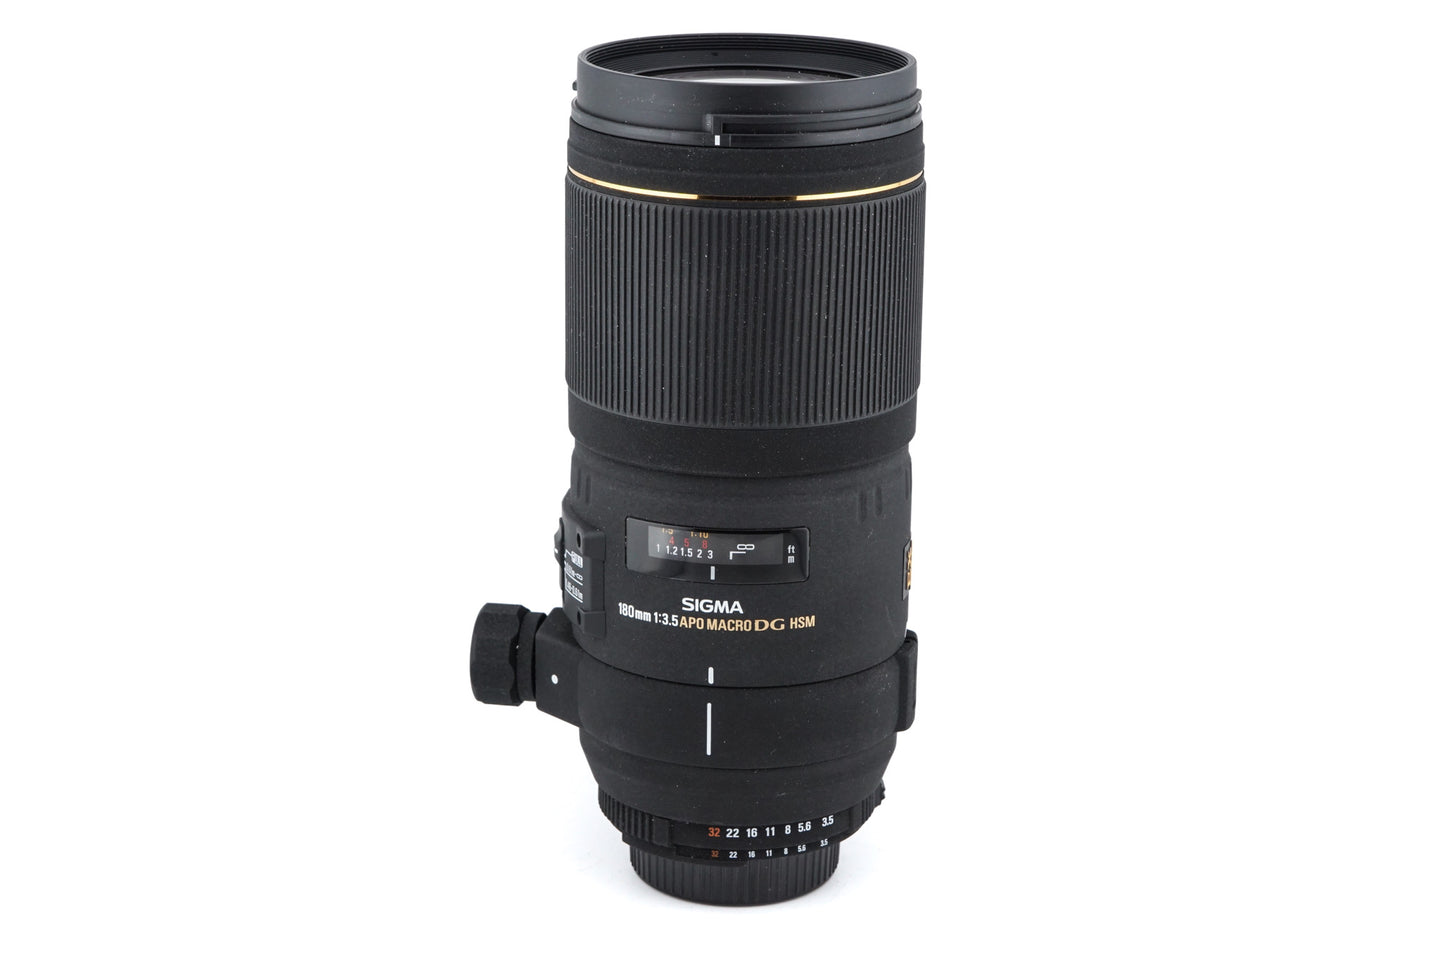 Sigma 180mm f3.5 APO Macro EX DG HSM - Lens